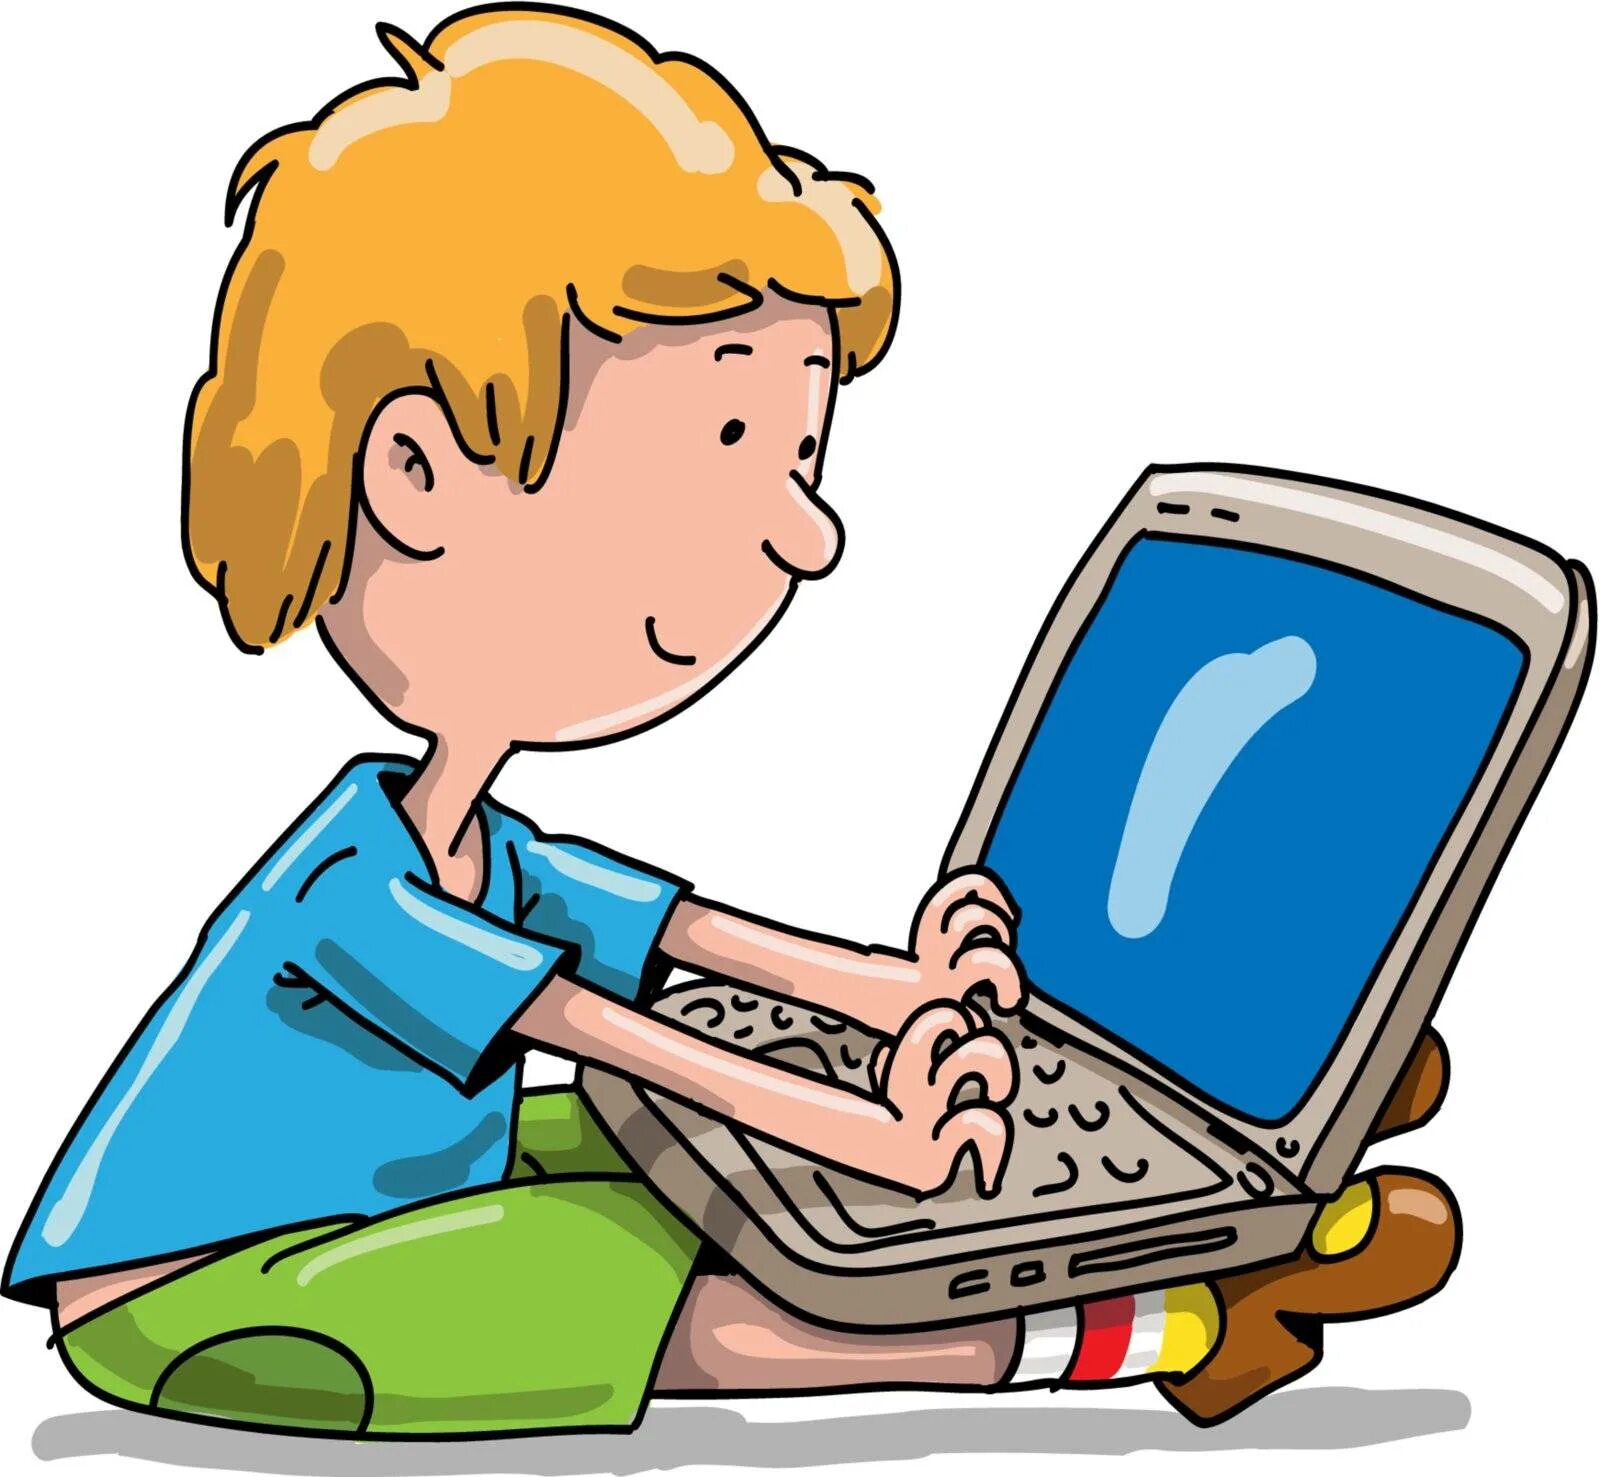 Компьютер для детей. Компьютер иллюстрация. Компьютер для школьника. Ребенок за компьютером. Read image c